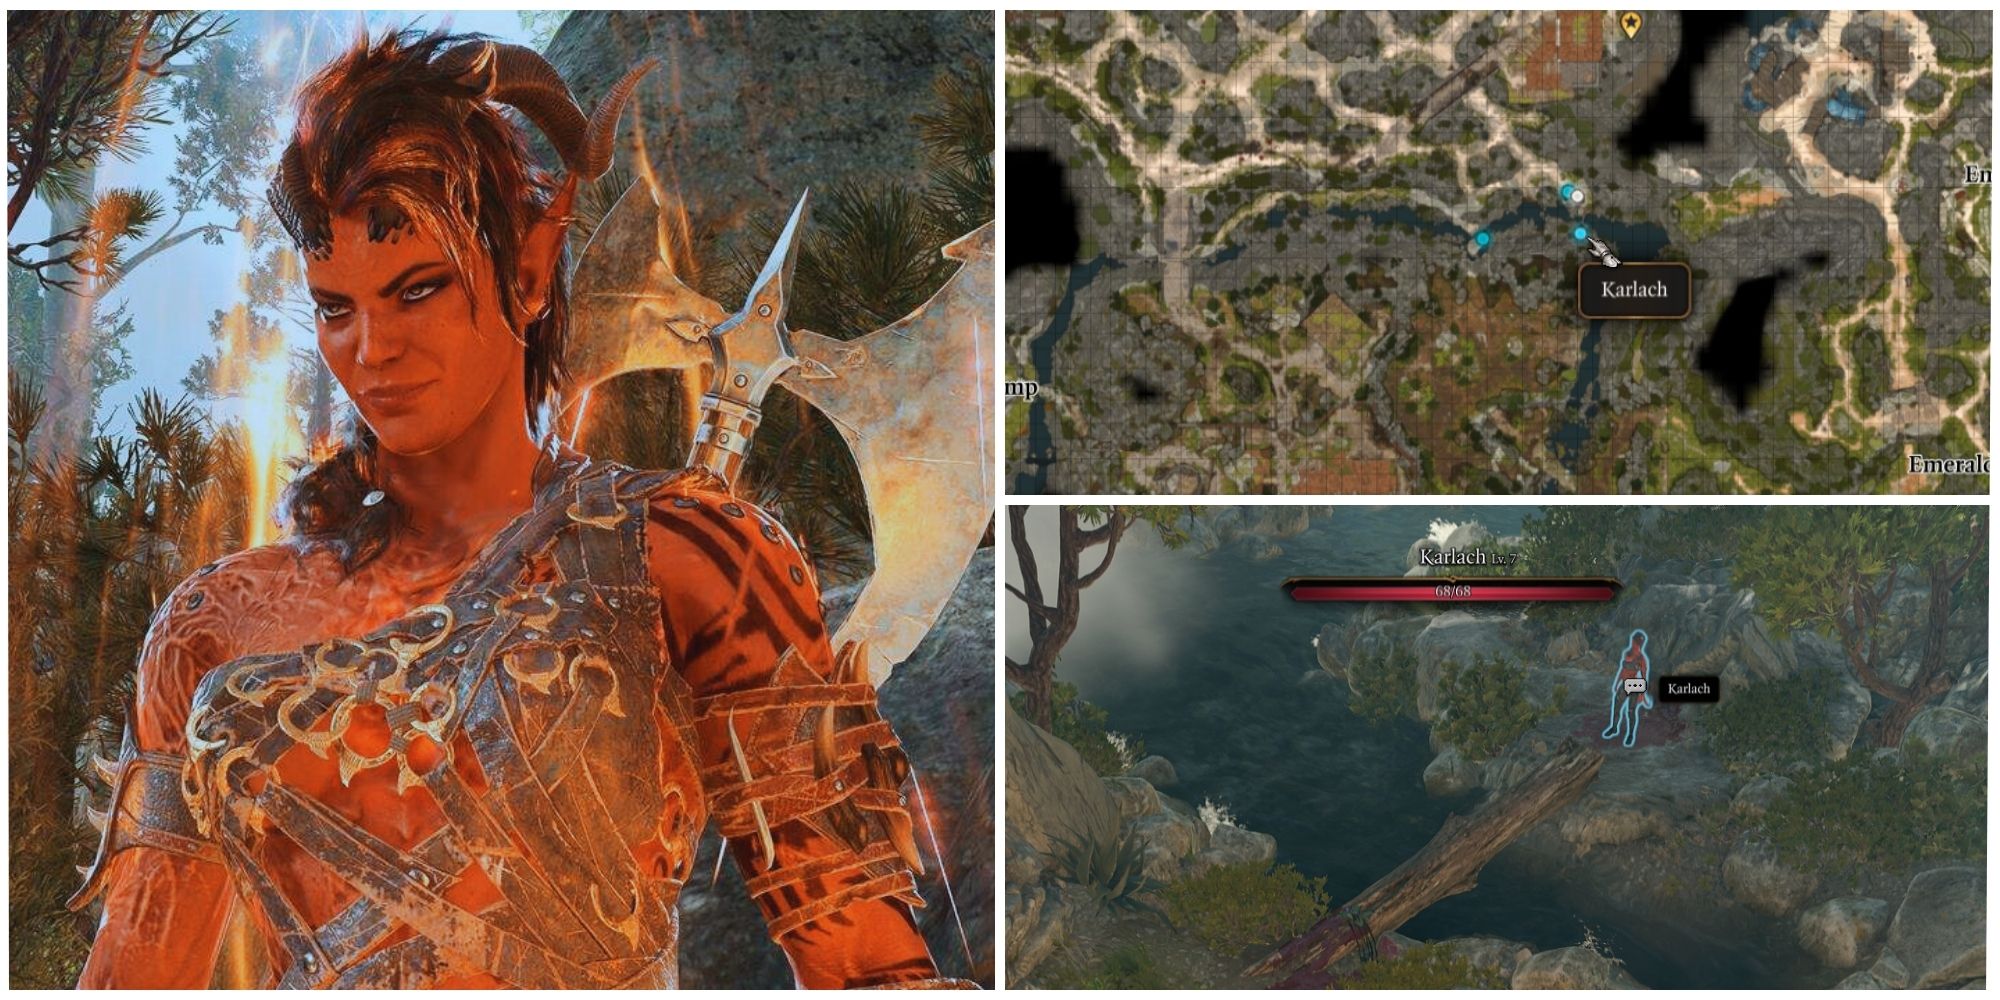 Baldur's Gate 3 Where To Find Karlach feature image